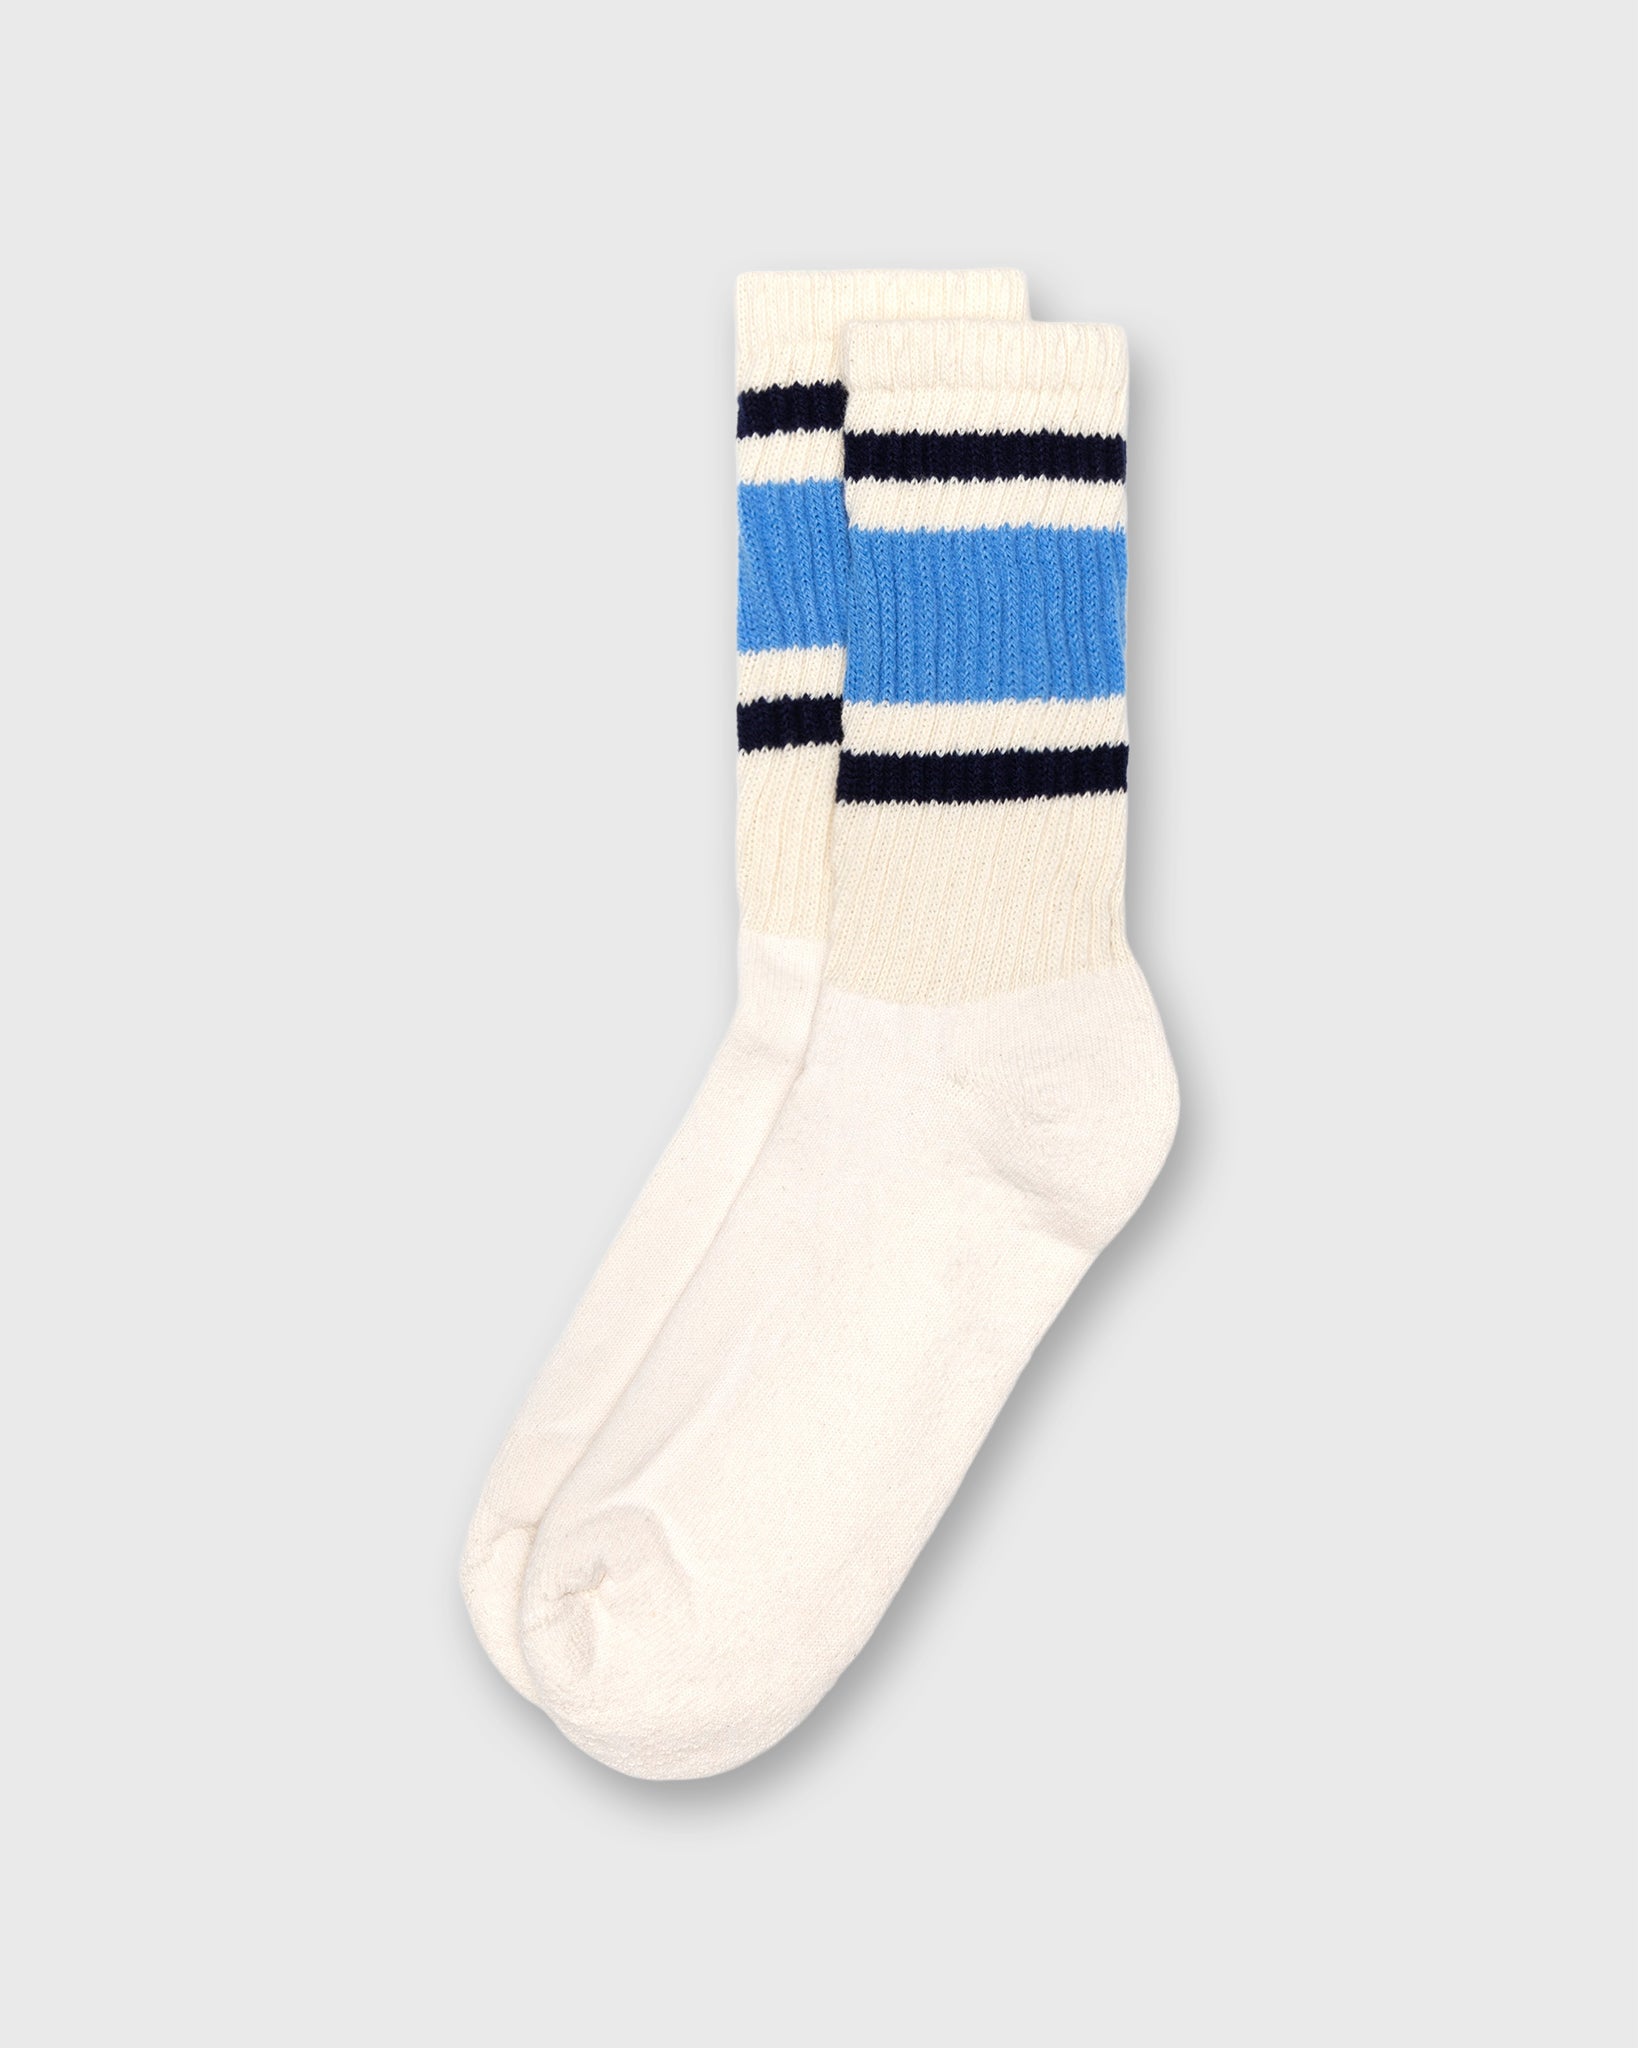 Retro Stripe Socks in Col. Blue/Navy